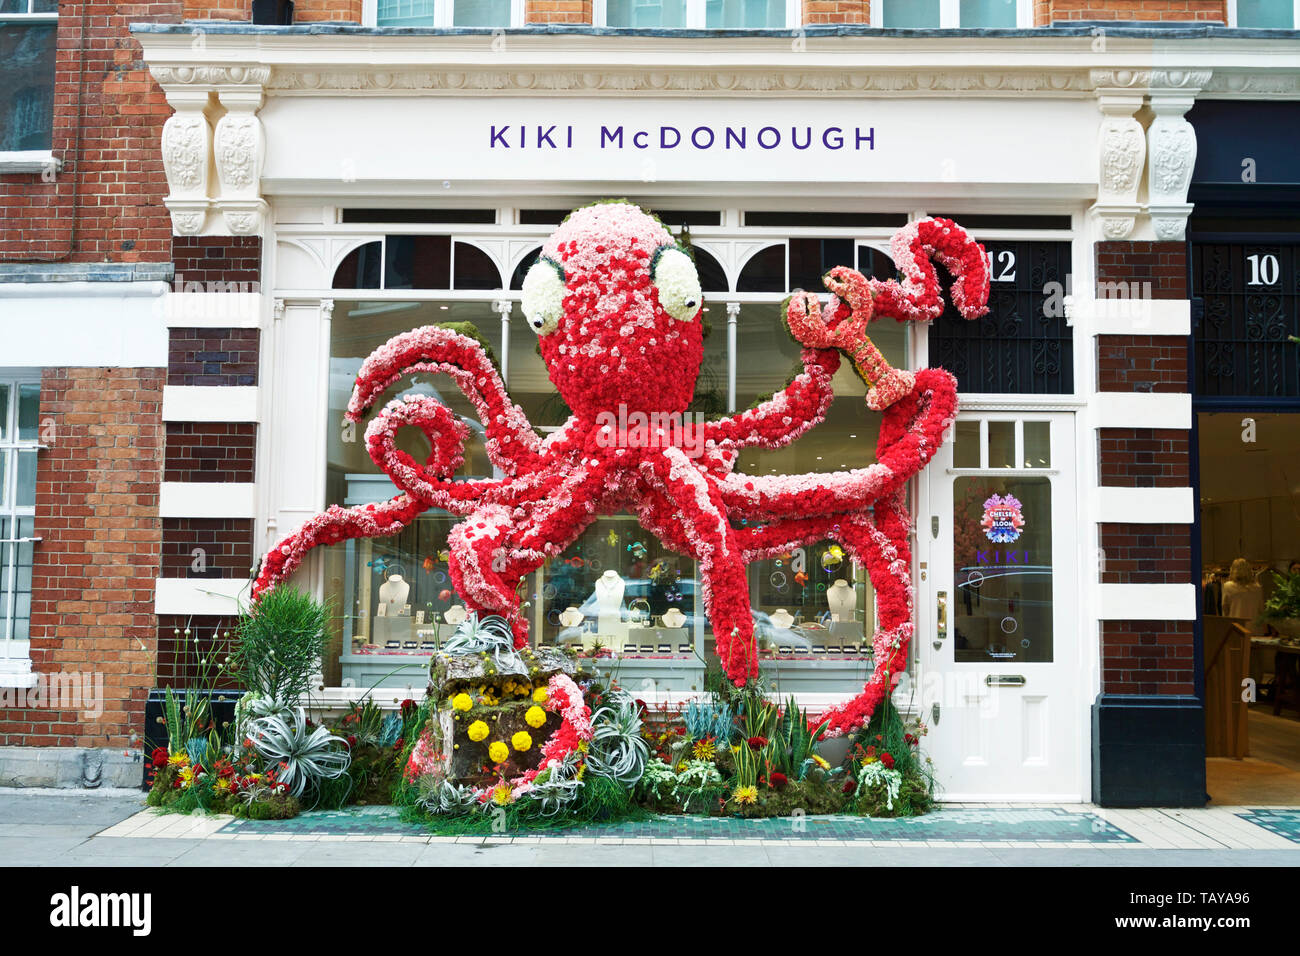 Chelsea in Bloom Londra, Regno Unito. Polpo scultura floreale al di fuori di Kiki McDonough, Symons Street, Chelsea. Royal Borough di Kensington e Chelsea. Foto Stock